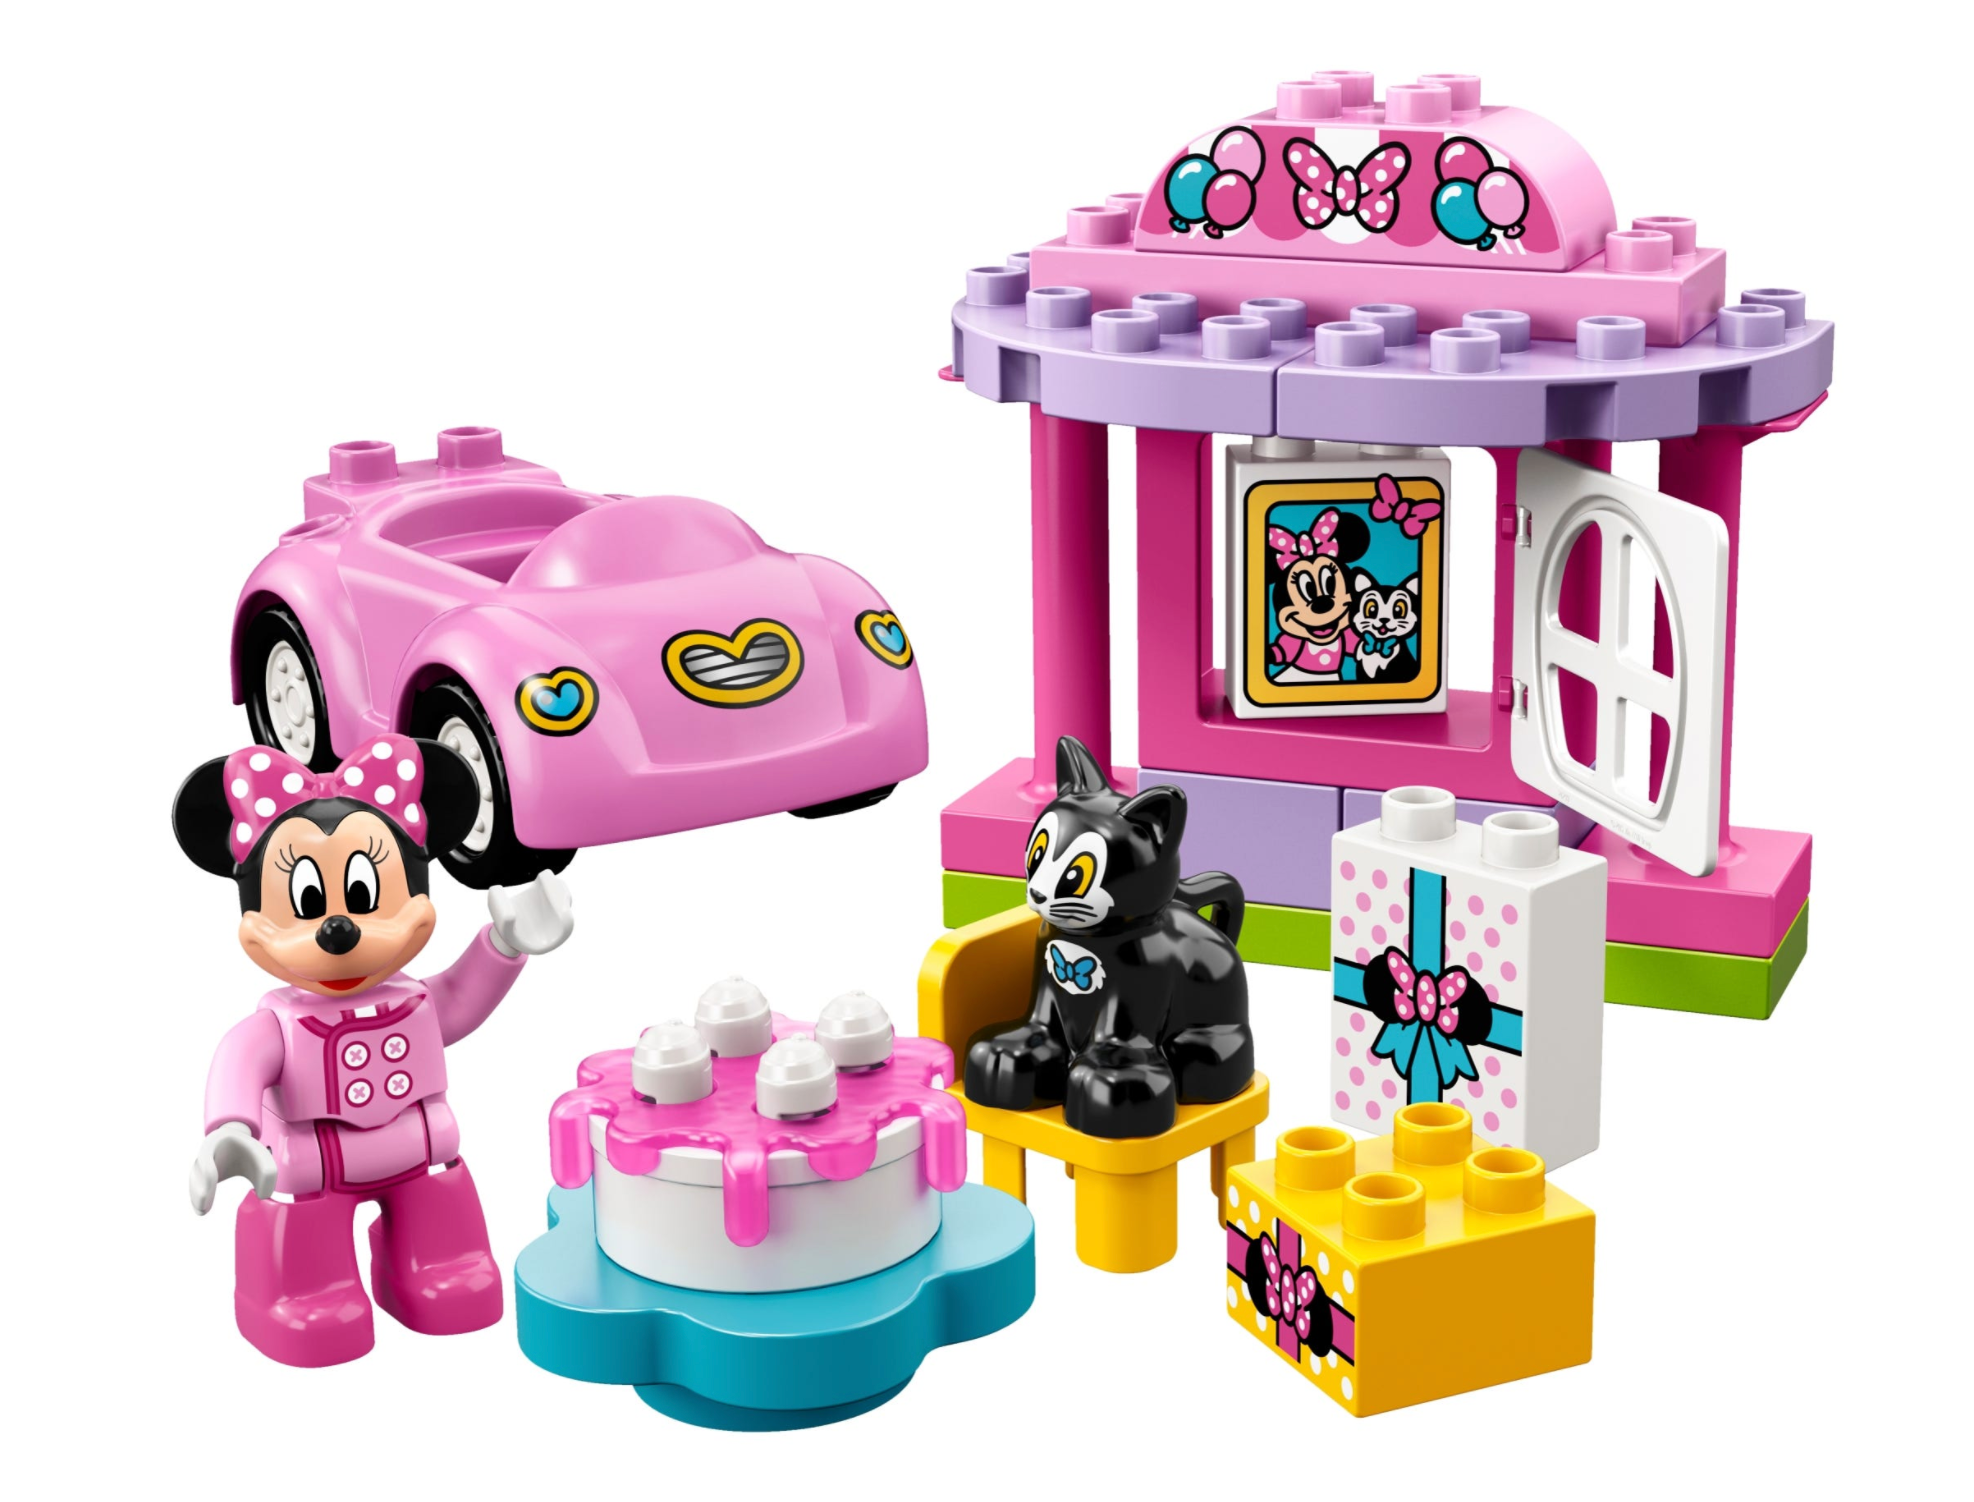 LEGO: DUPLO - Minnie's Birthday Party